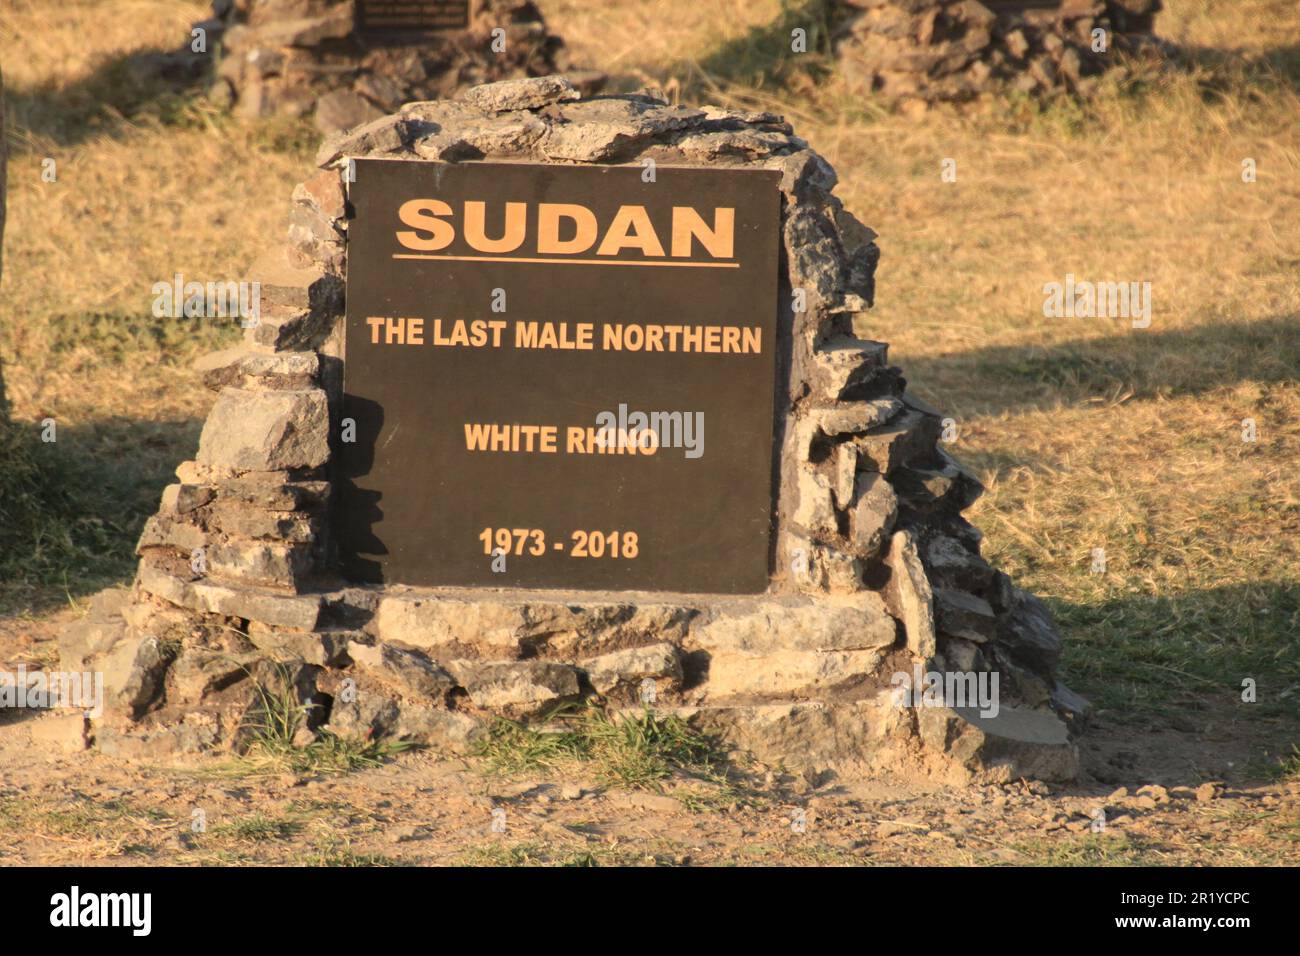 Tumba del último rinoceronte blanco macho del norte de Sudán. OL Pejeta Conservancy. Laikipia Plateau, Kenia, África, Cementerio del rinoceronte, lápidas de rinoceronte que marcan wh Foto de stock